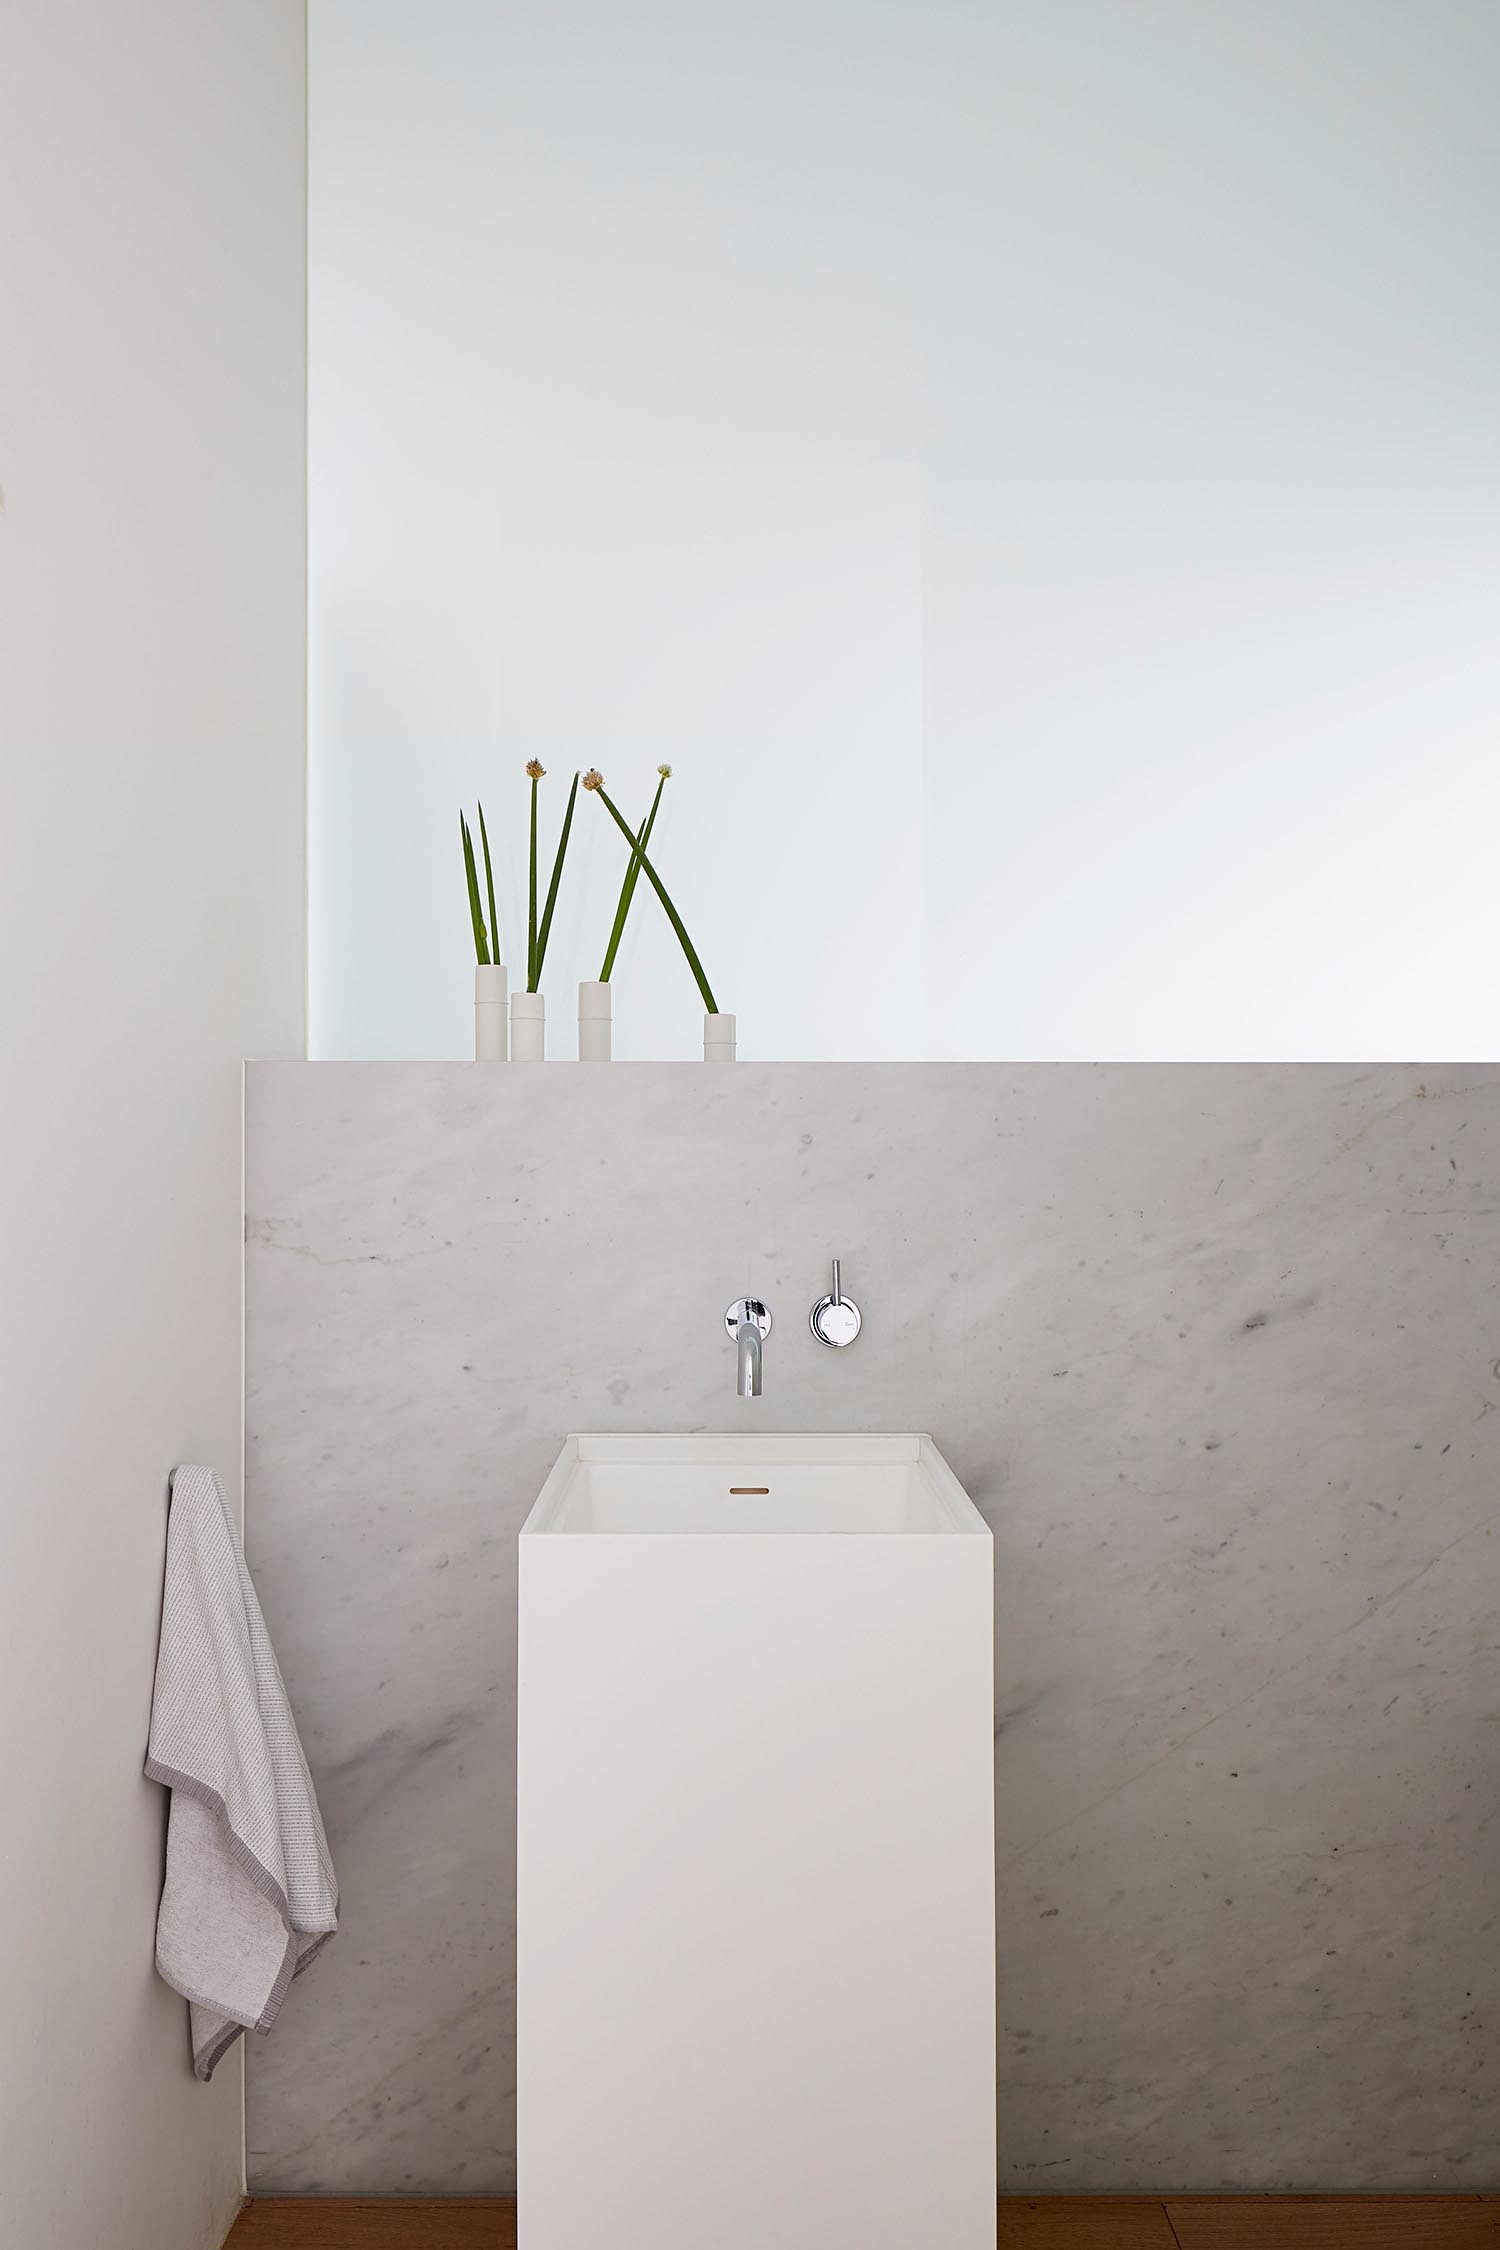 Современная ванная комната в нейтральной цветовой гамме с современной белой раковиной на пьедестале.